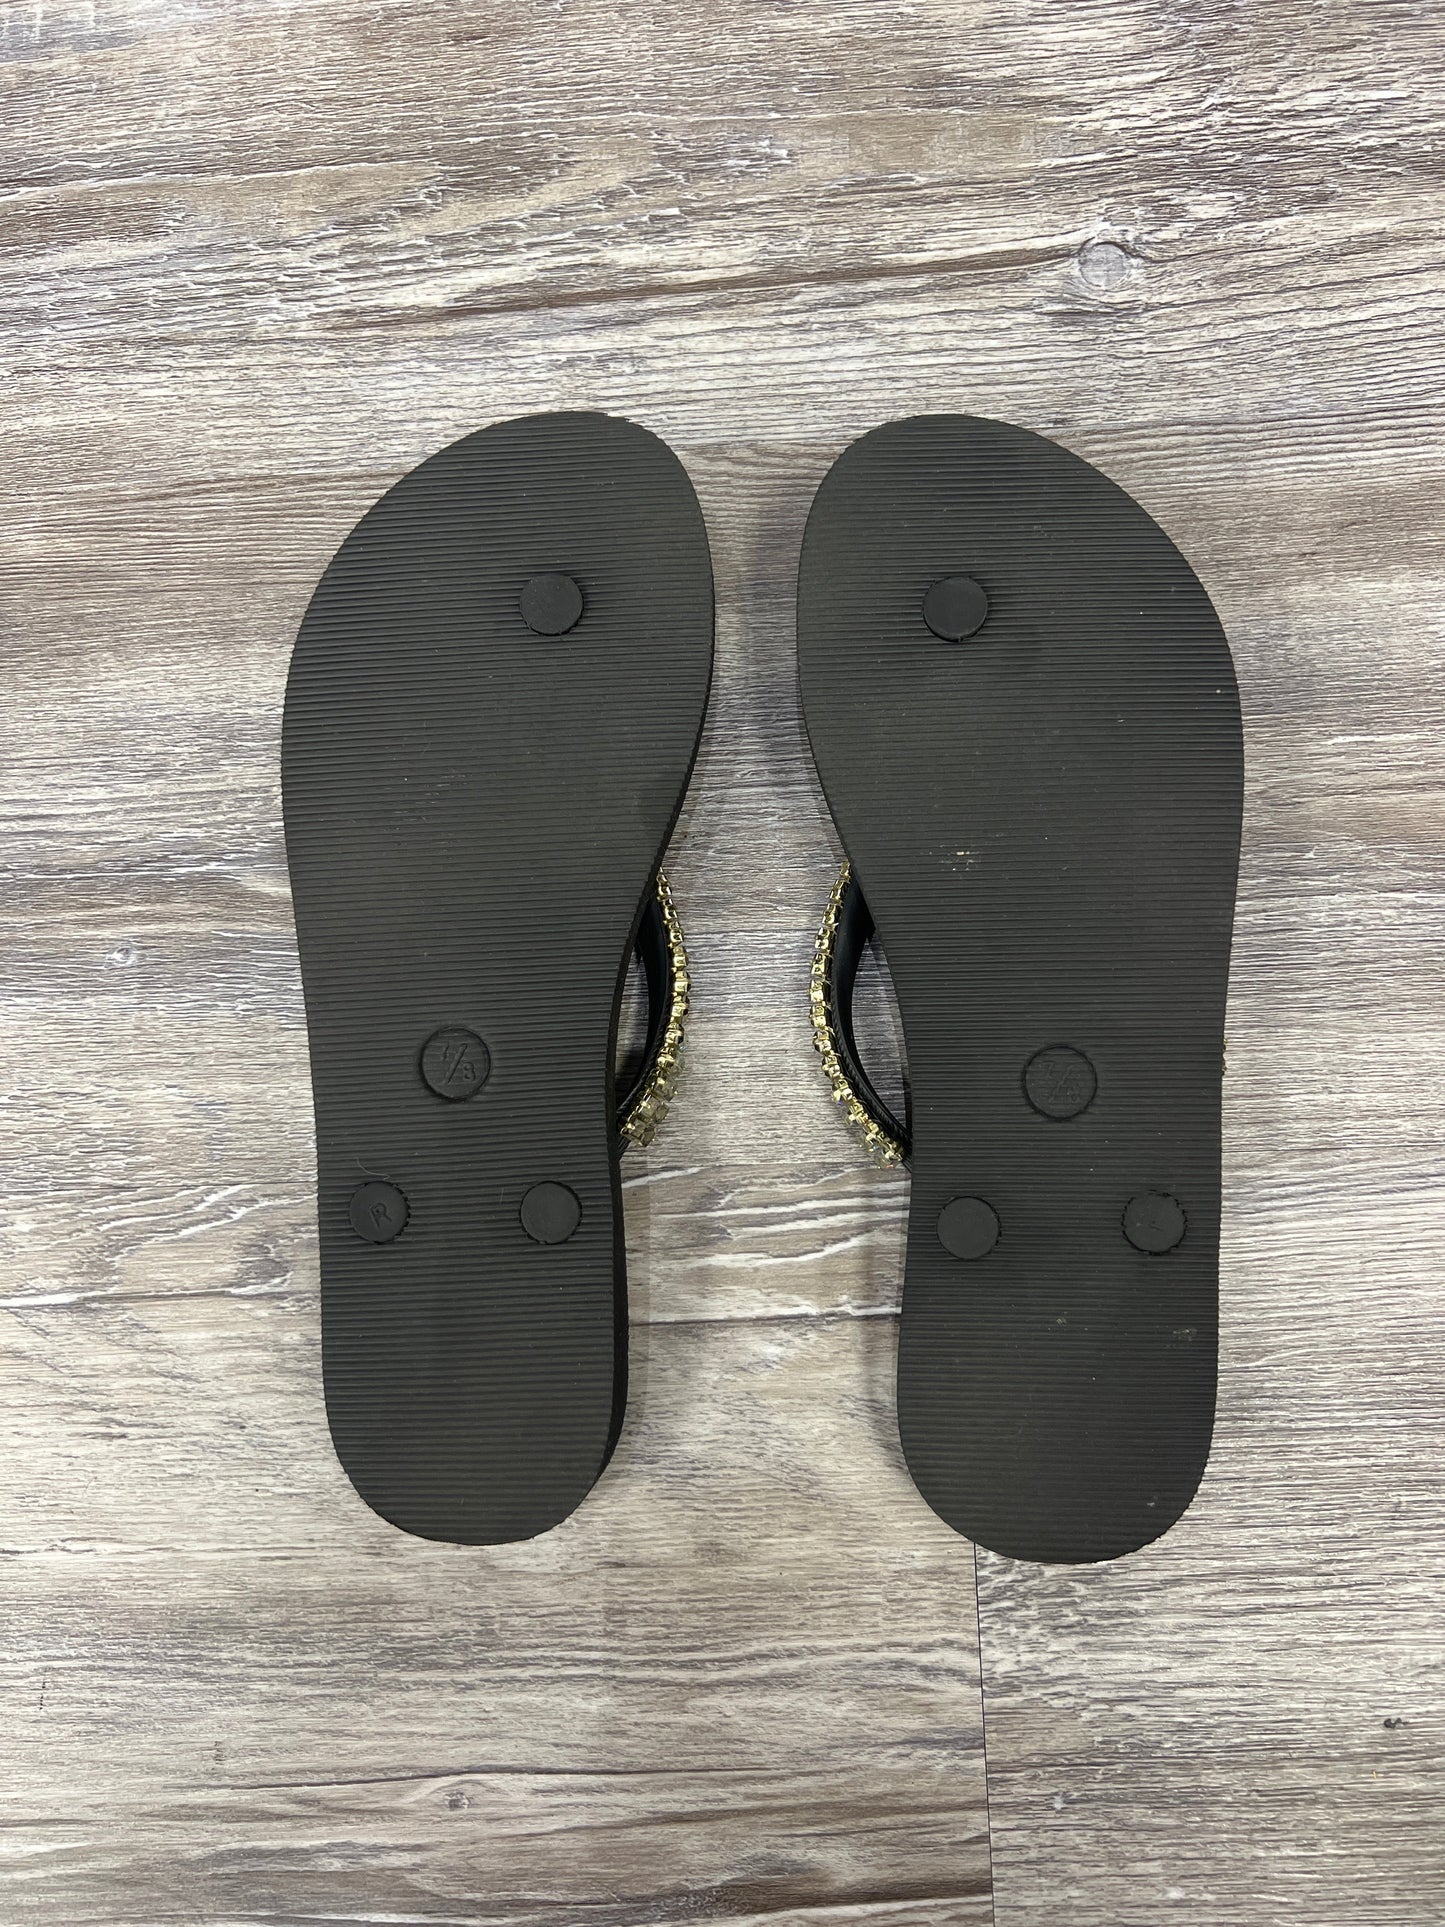 Sandals Flip Flops By Mystique Size: 7/8